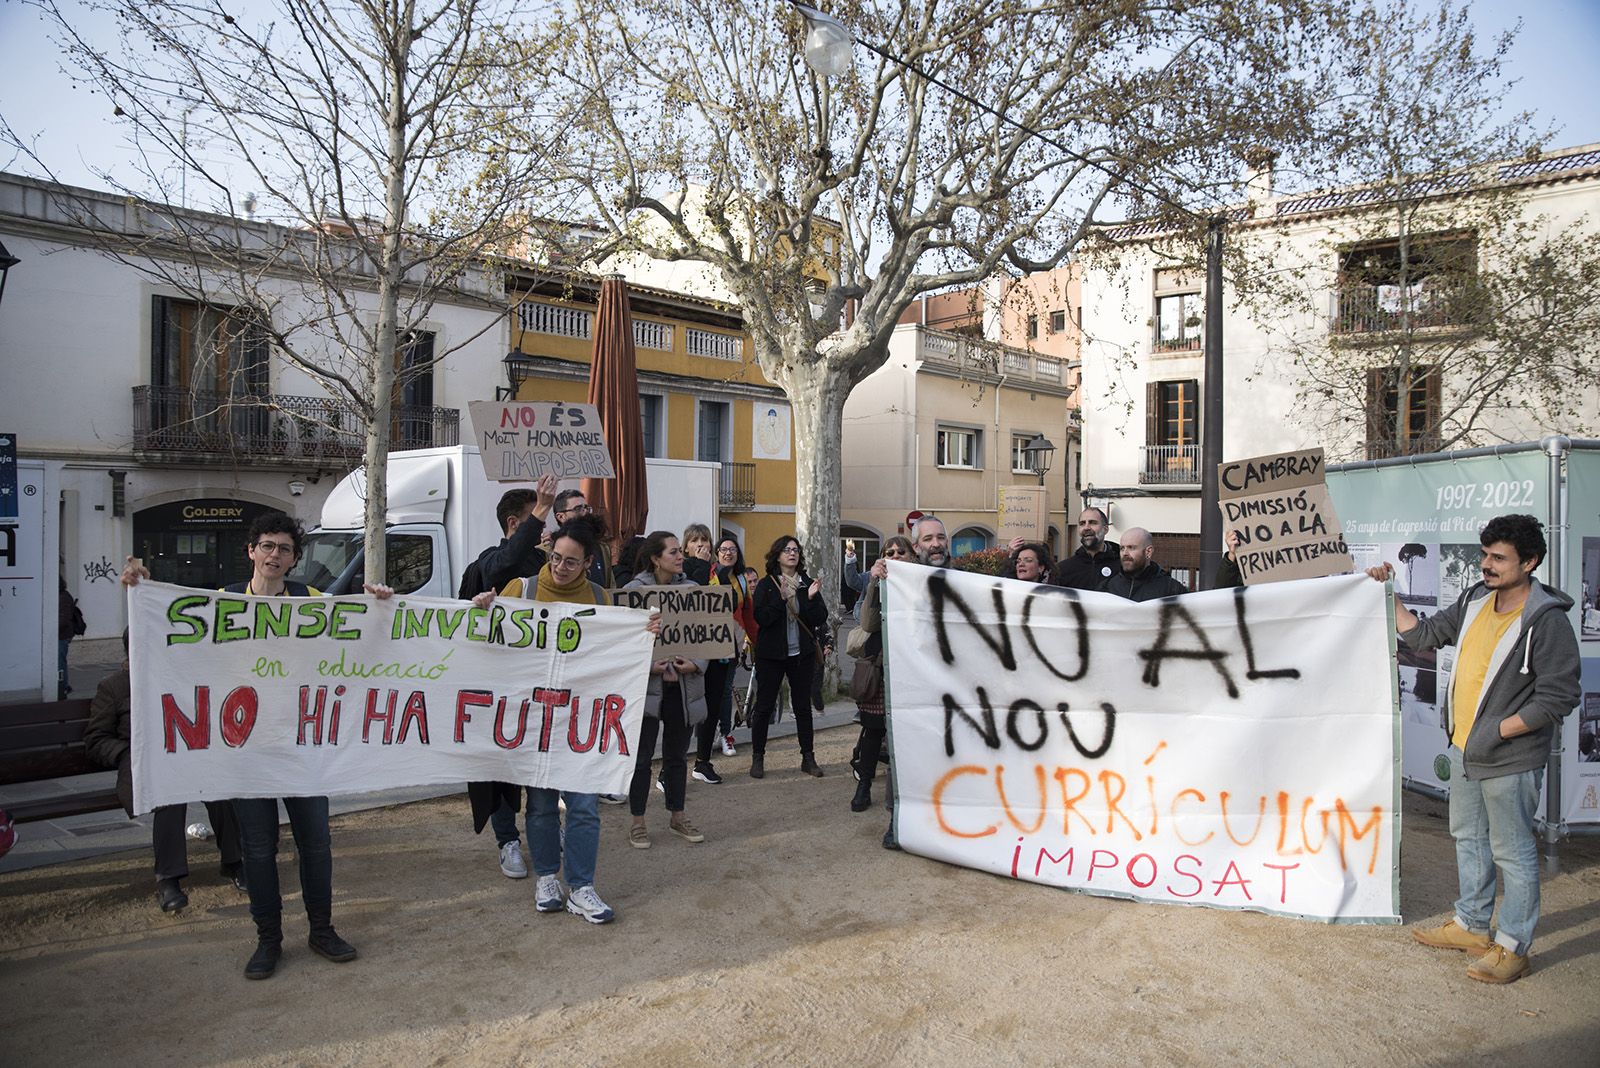 Protesta passada de docents davant del president Aragonès pels canvis en educació. FOTO: Bernat Millet